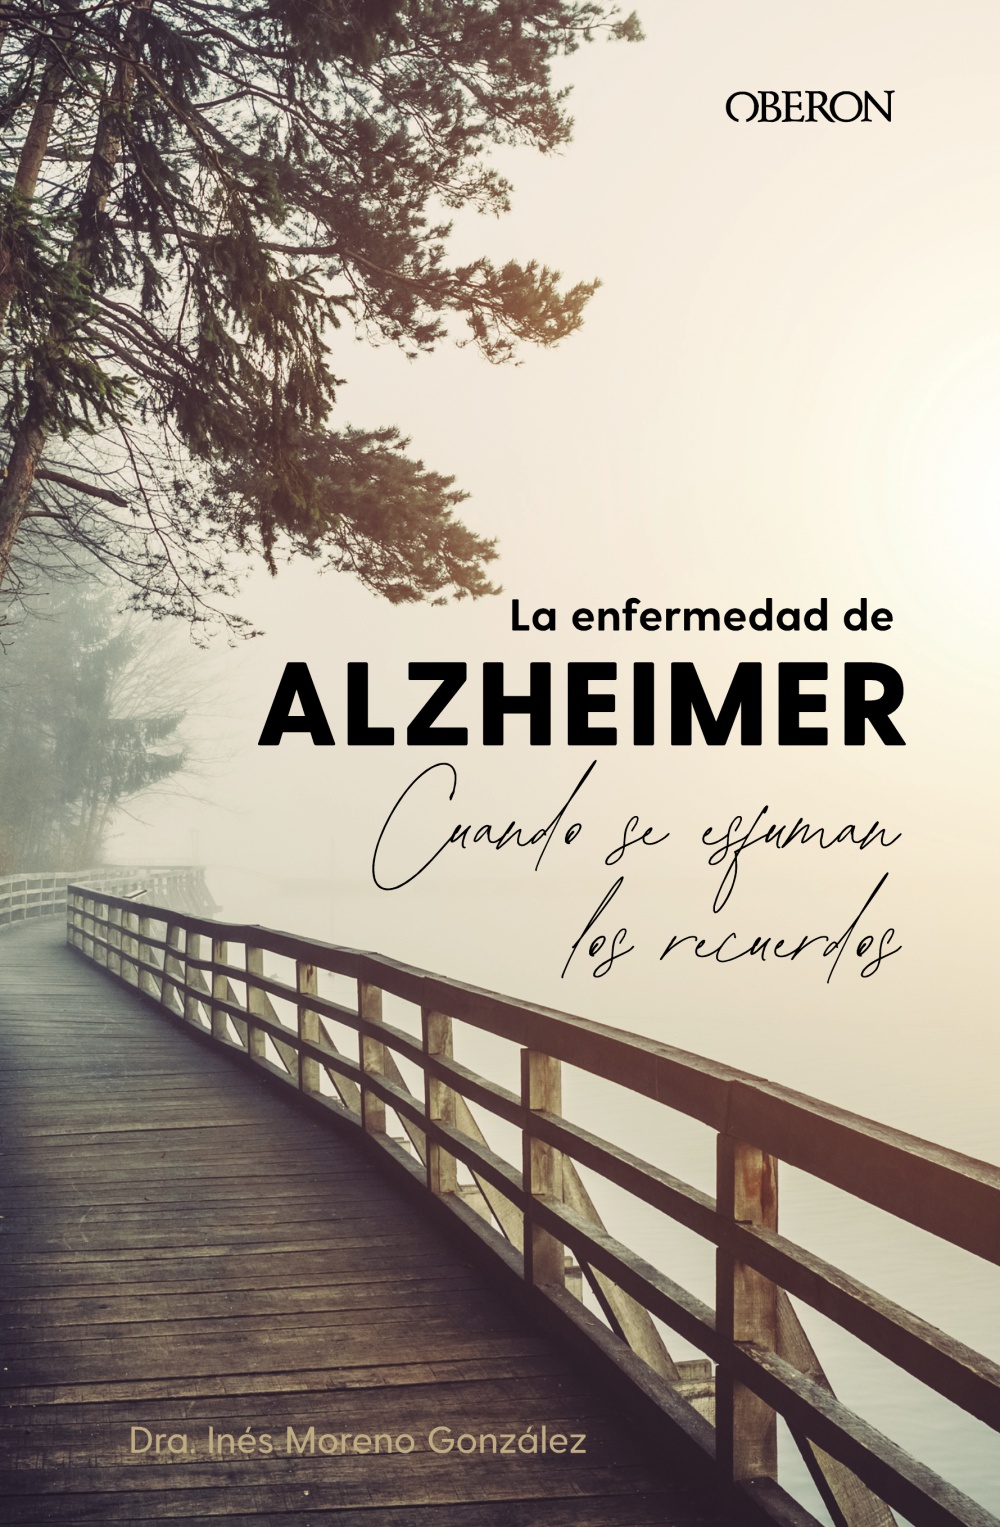 la-enfermedad-de-alzheimer-cuando-se-esfuman-los-recuerdos-978-84-415-4879-4.jpg